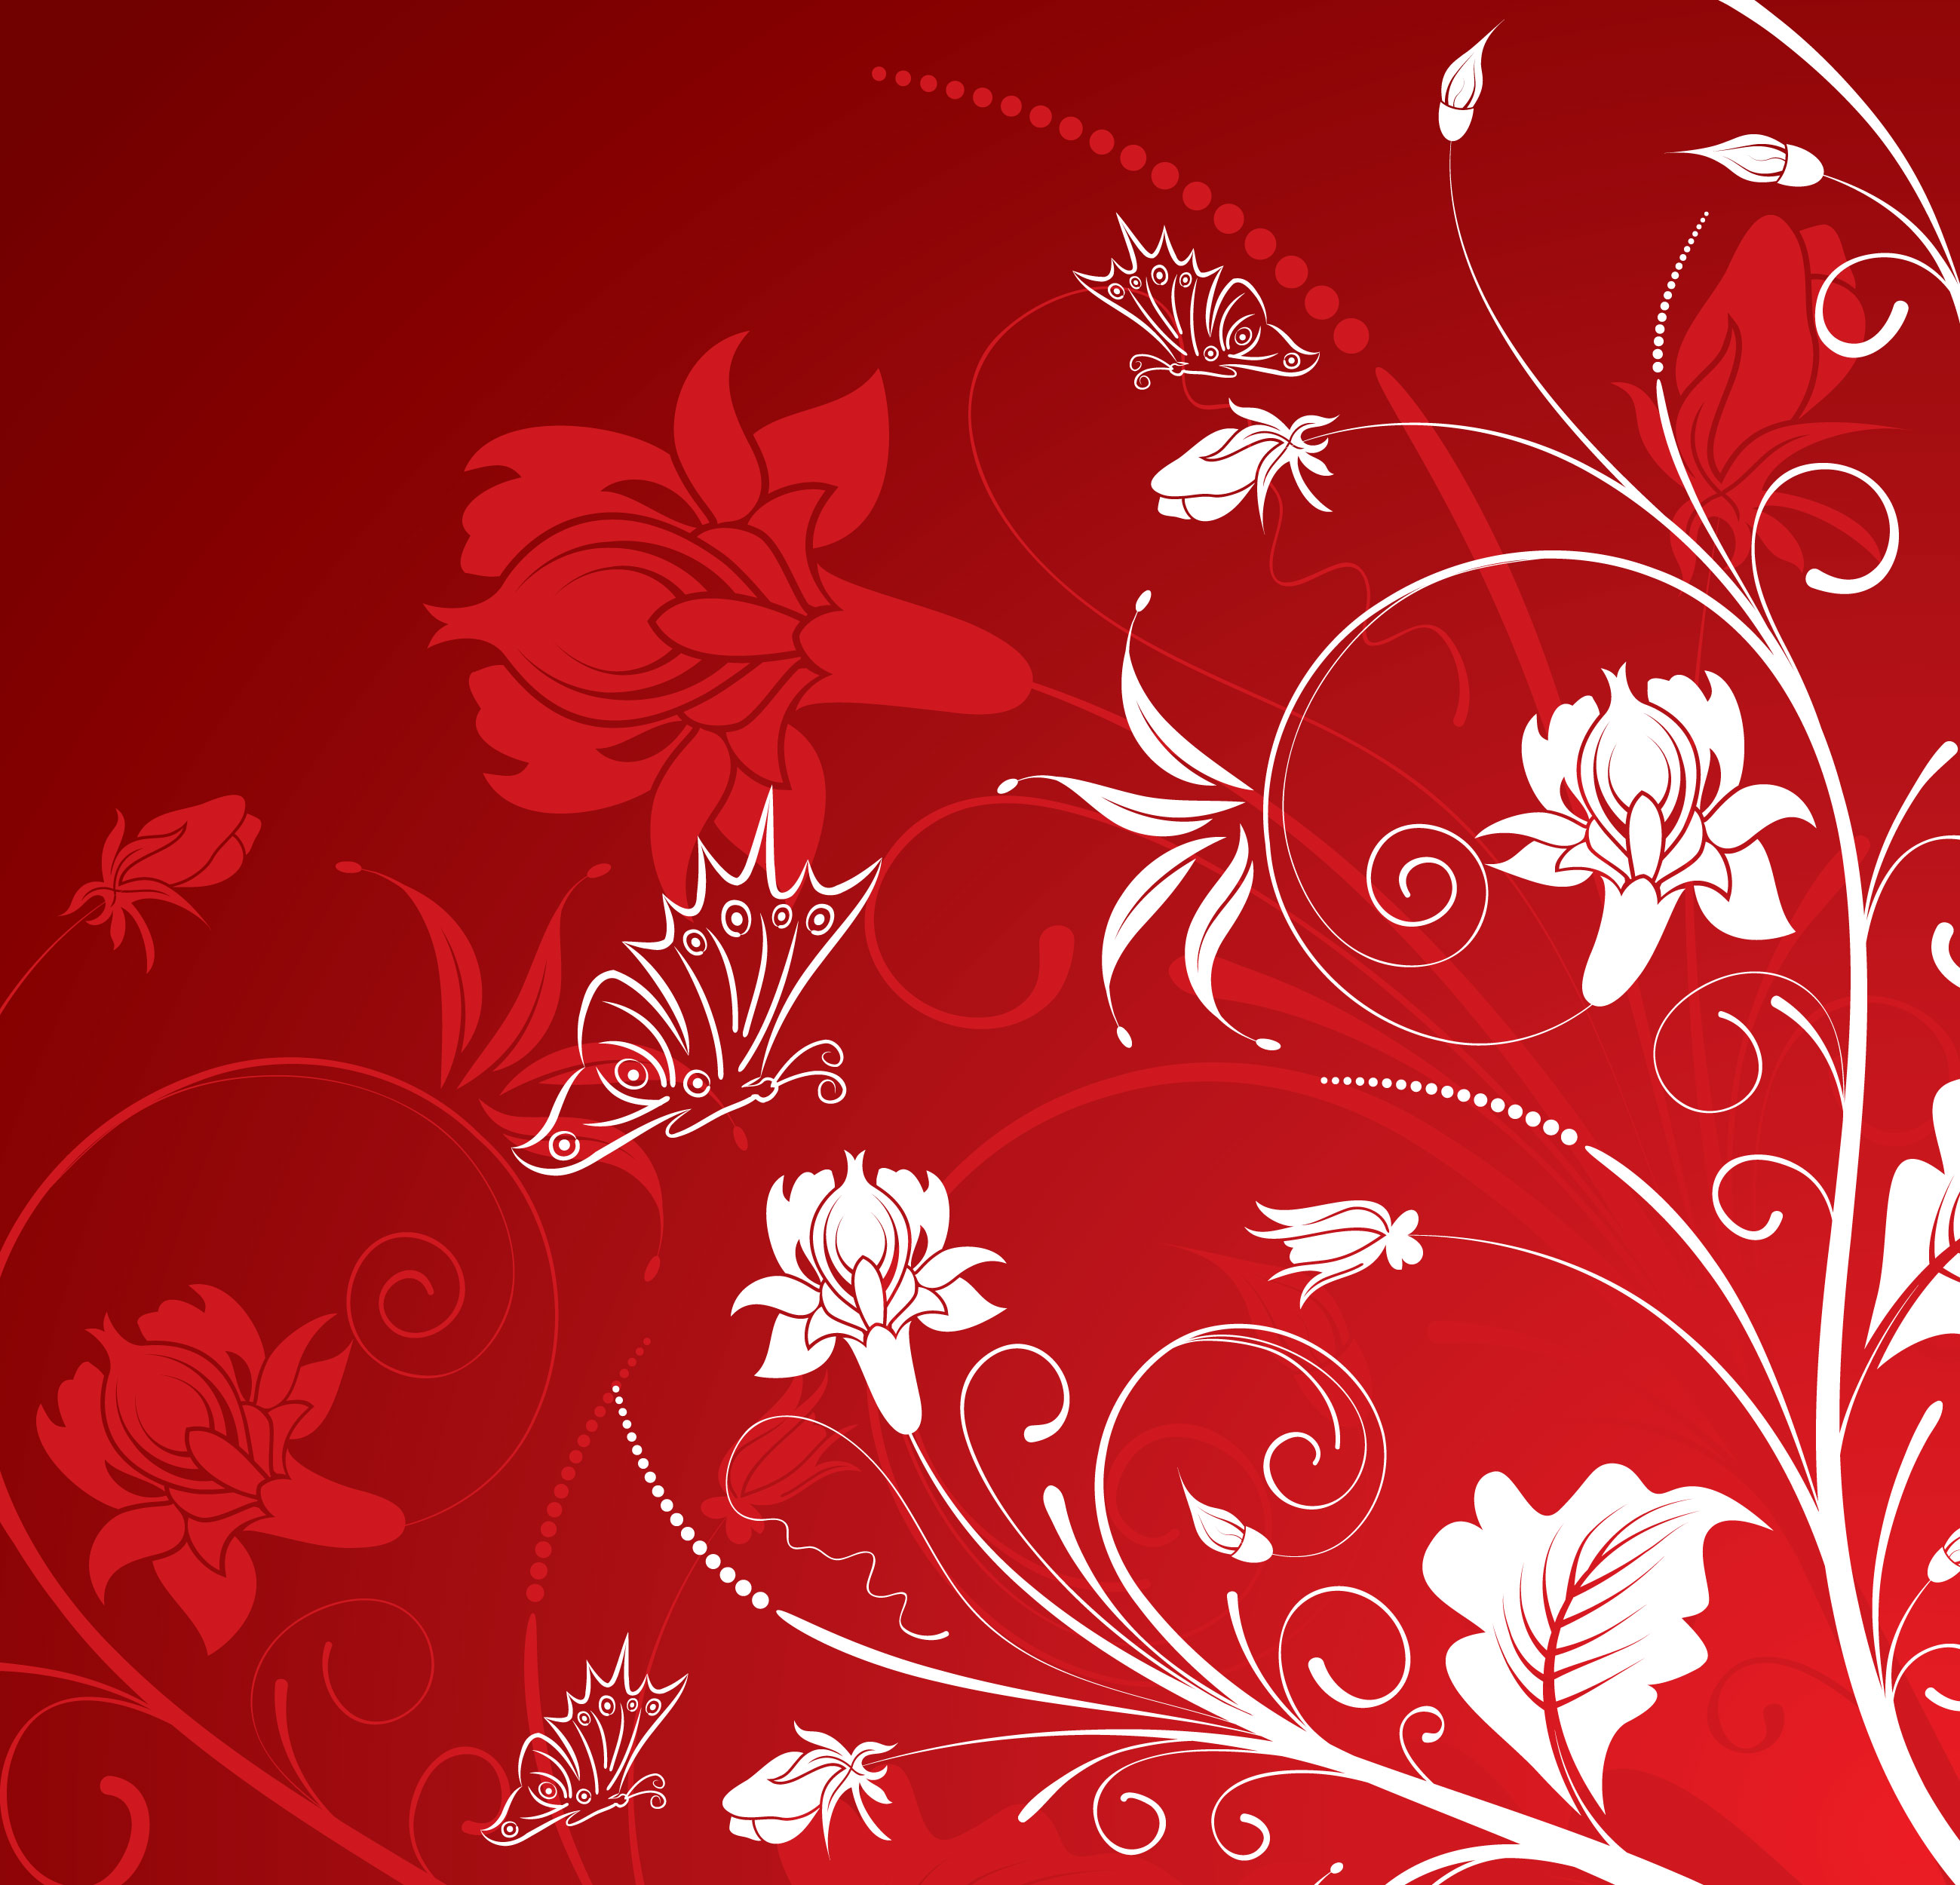 赤い花のイラスト フリー素材 背景 壁紙no 1008 白抜き ワインレッド 蝶